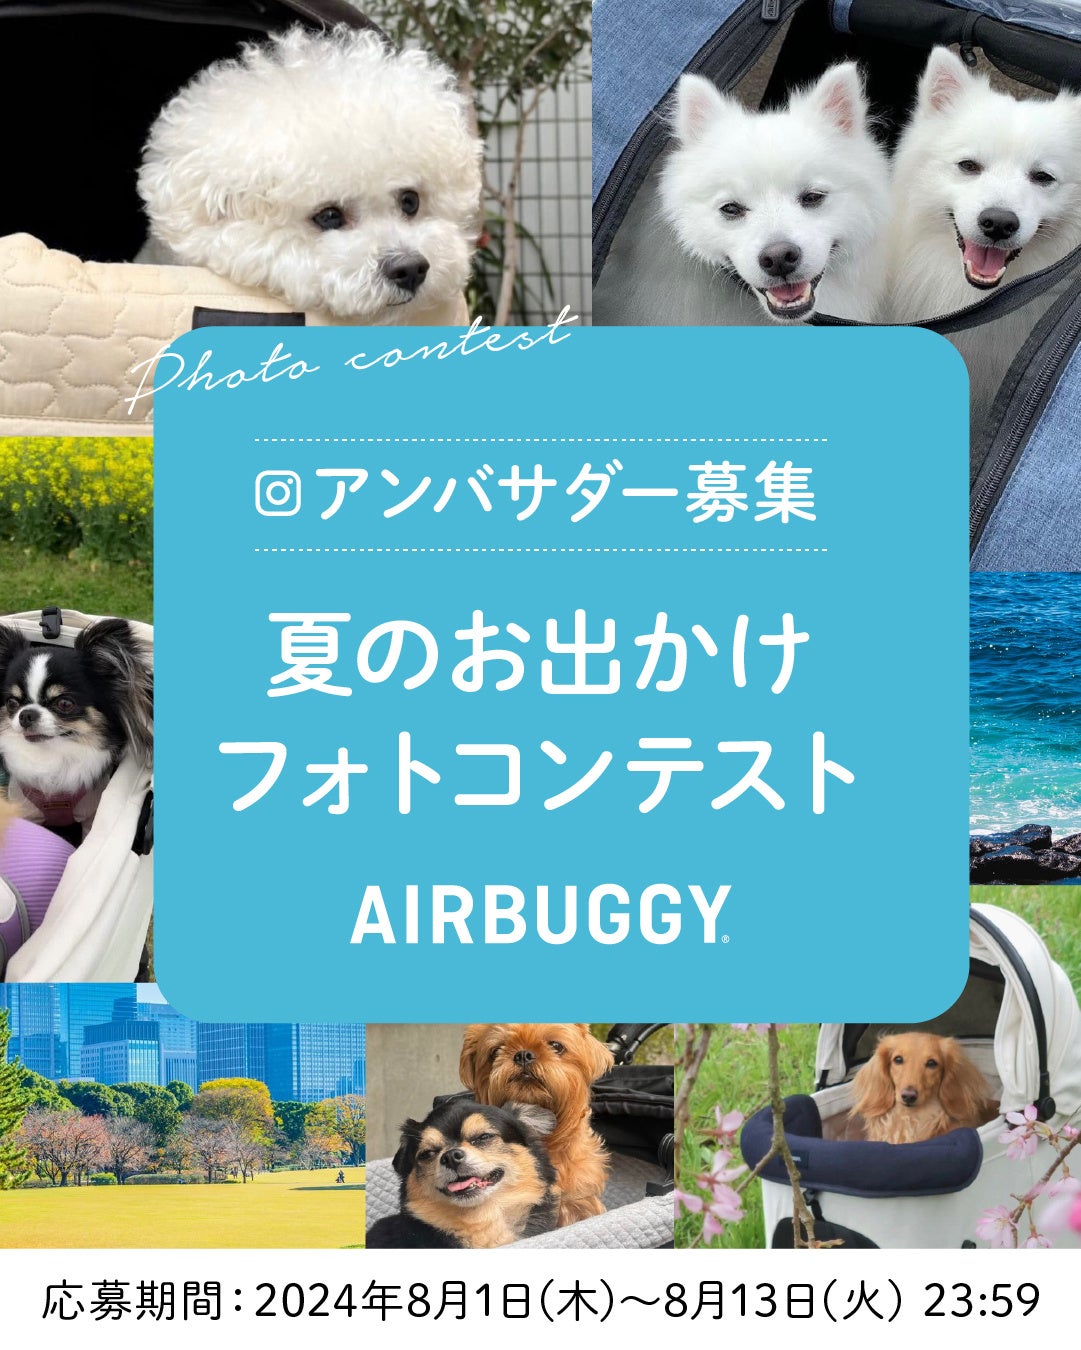 「エアバギーと行こう！夏休みにペットとクールに楽しむ特別な体験」　AIRBUGGY PET公式インスタグラムで夏のお出かけフォトコンテスト開催《2024/8/1(木)~13(火)》